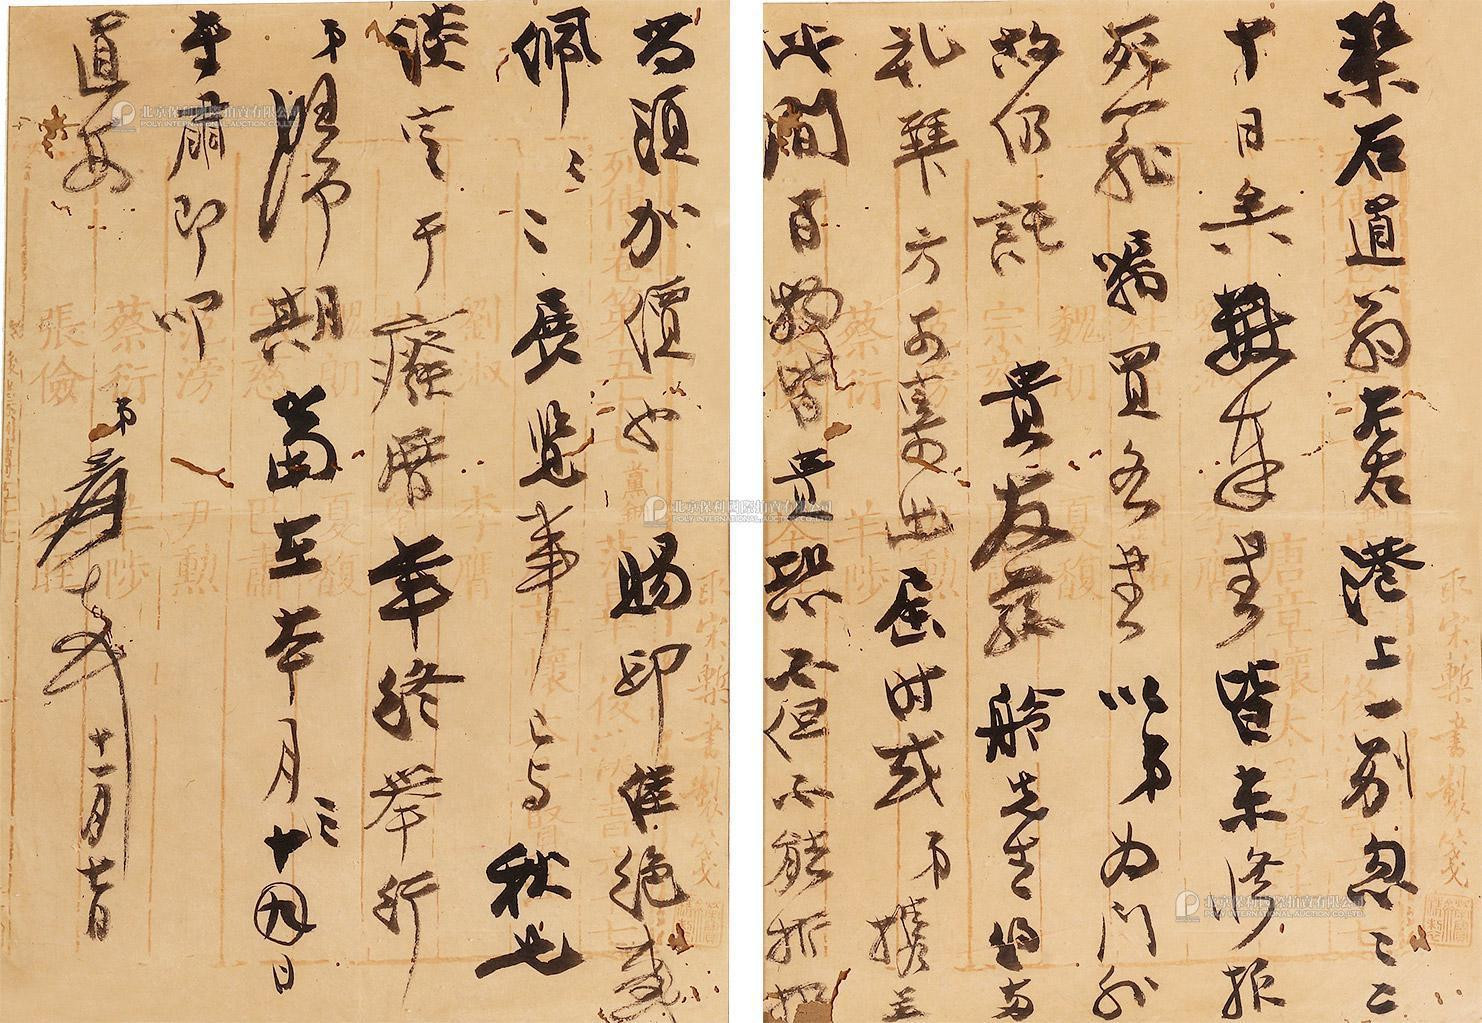 One letter of two pages by Zhang Daqian to Jian Qin Zhai